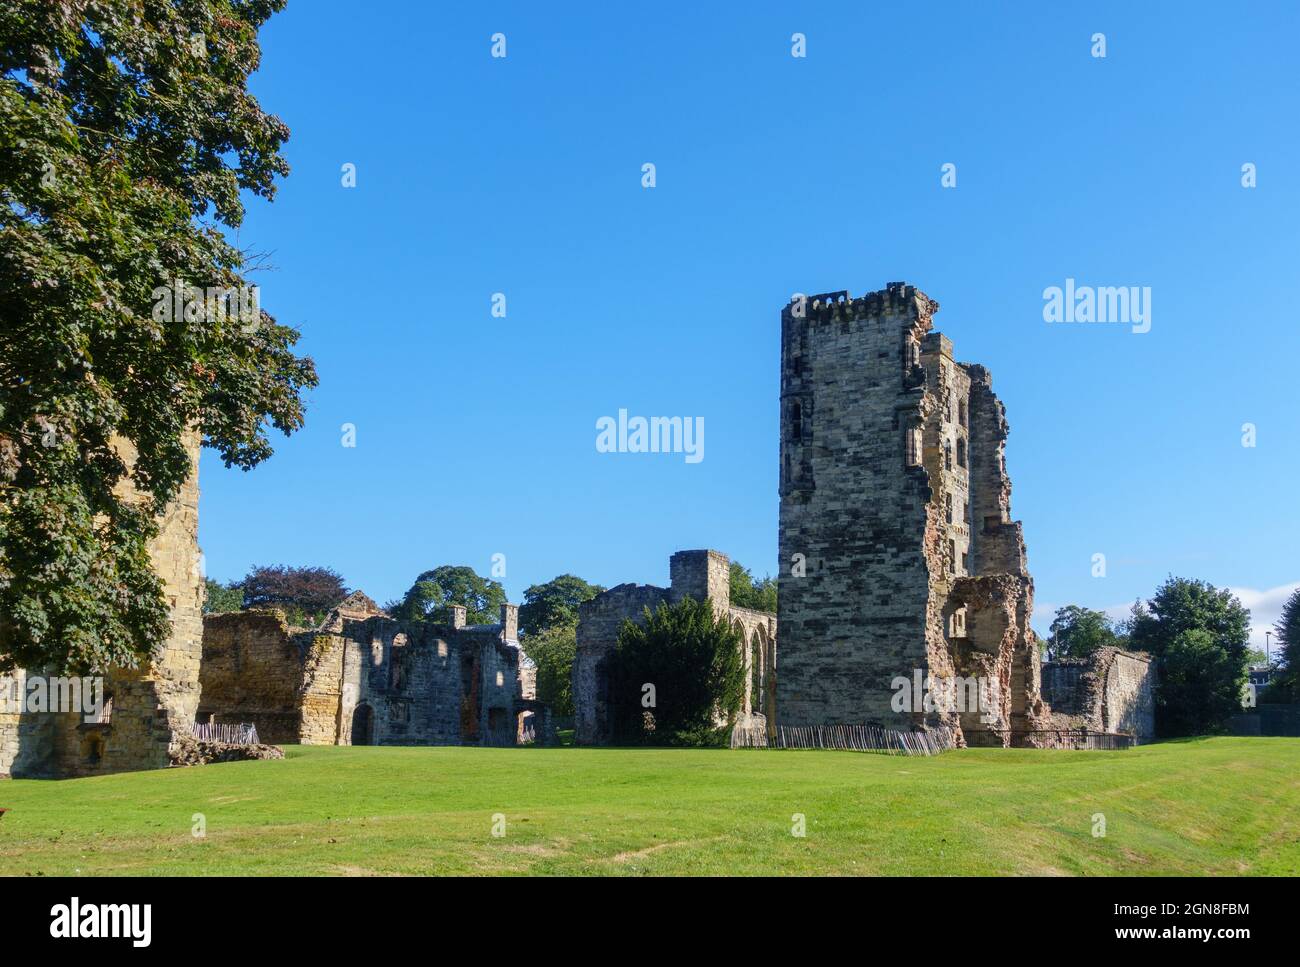 Ruinas de Ashby-de-la-Zouch, castillo de Ashby-de-la-Zouch, Leicestershire, East Midlands, Reino Unido Foto de stock